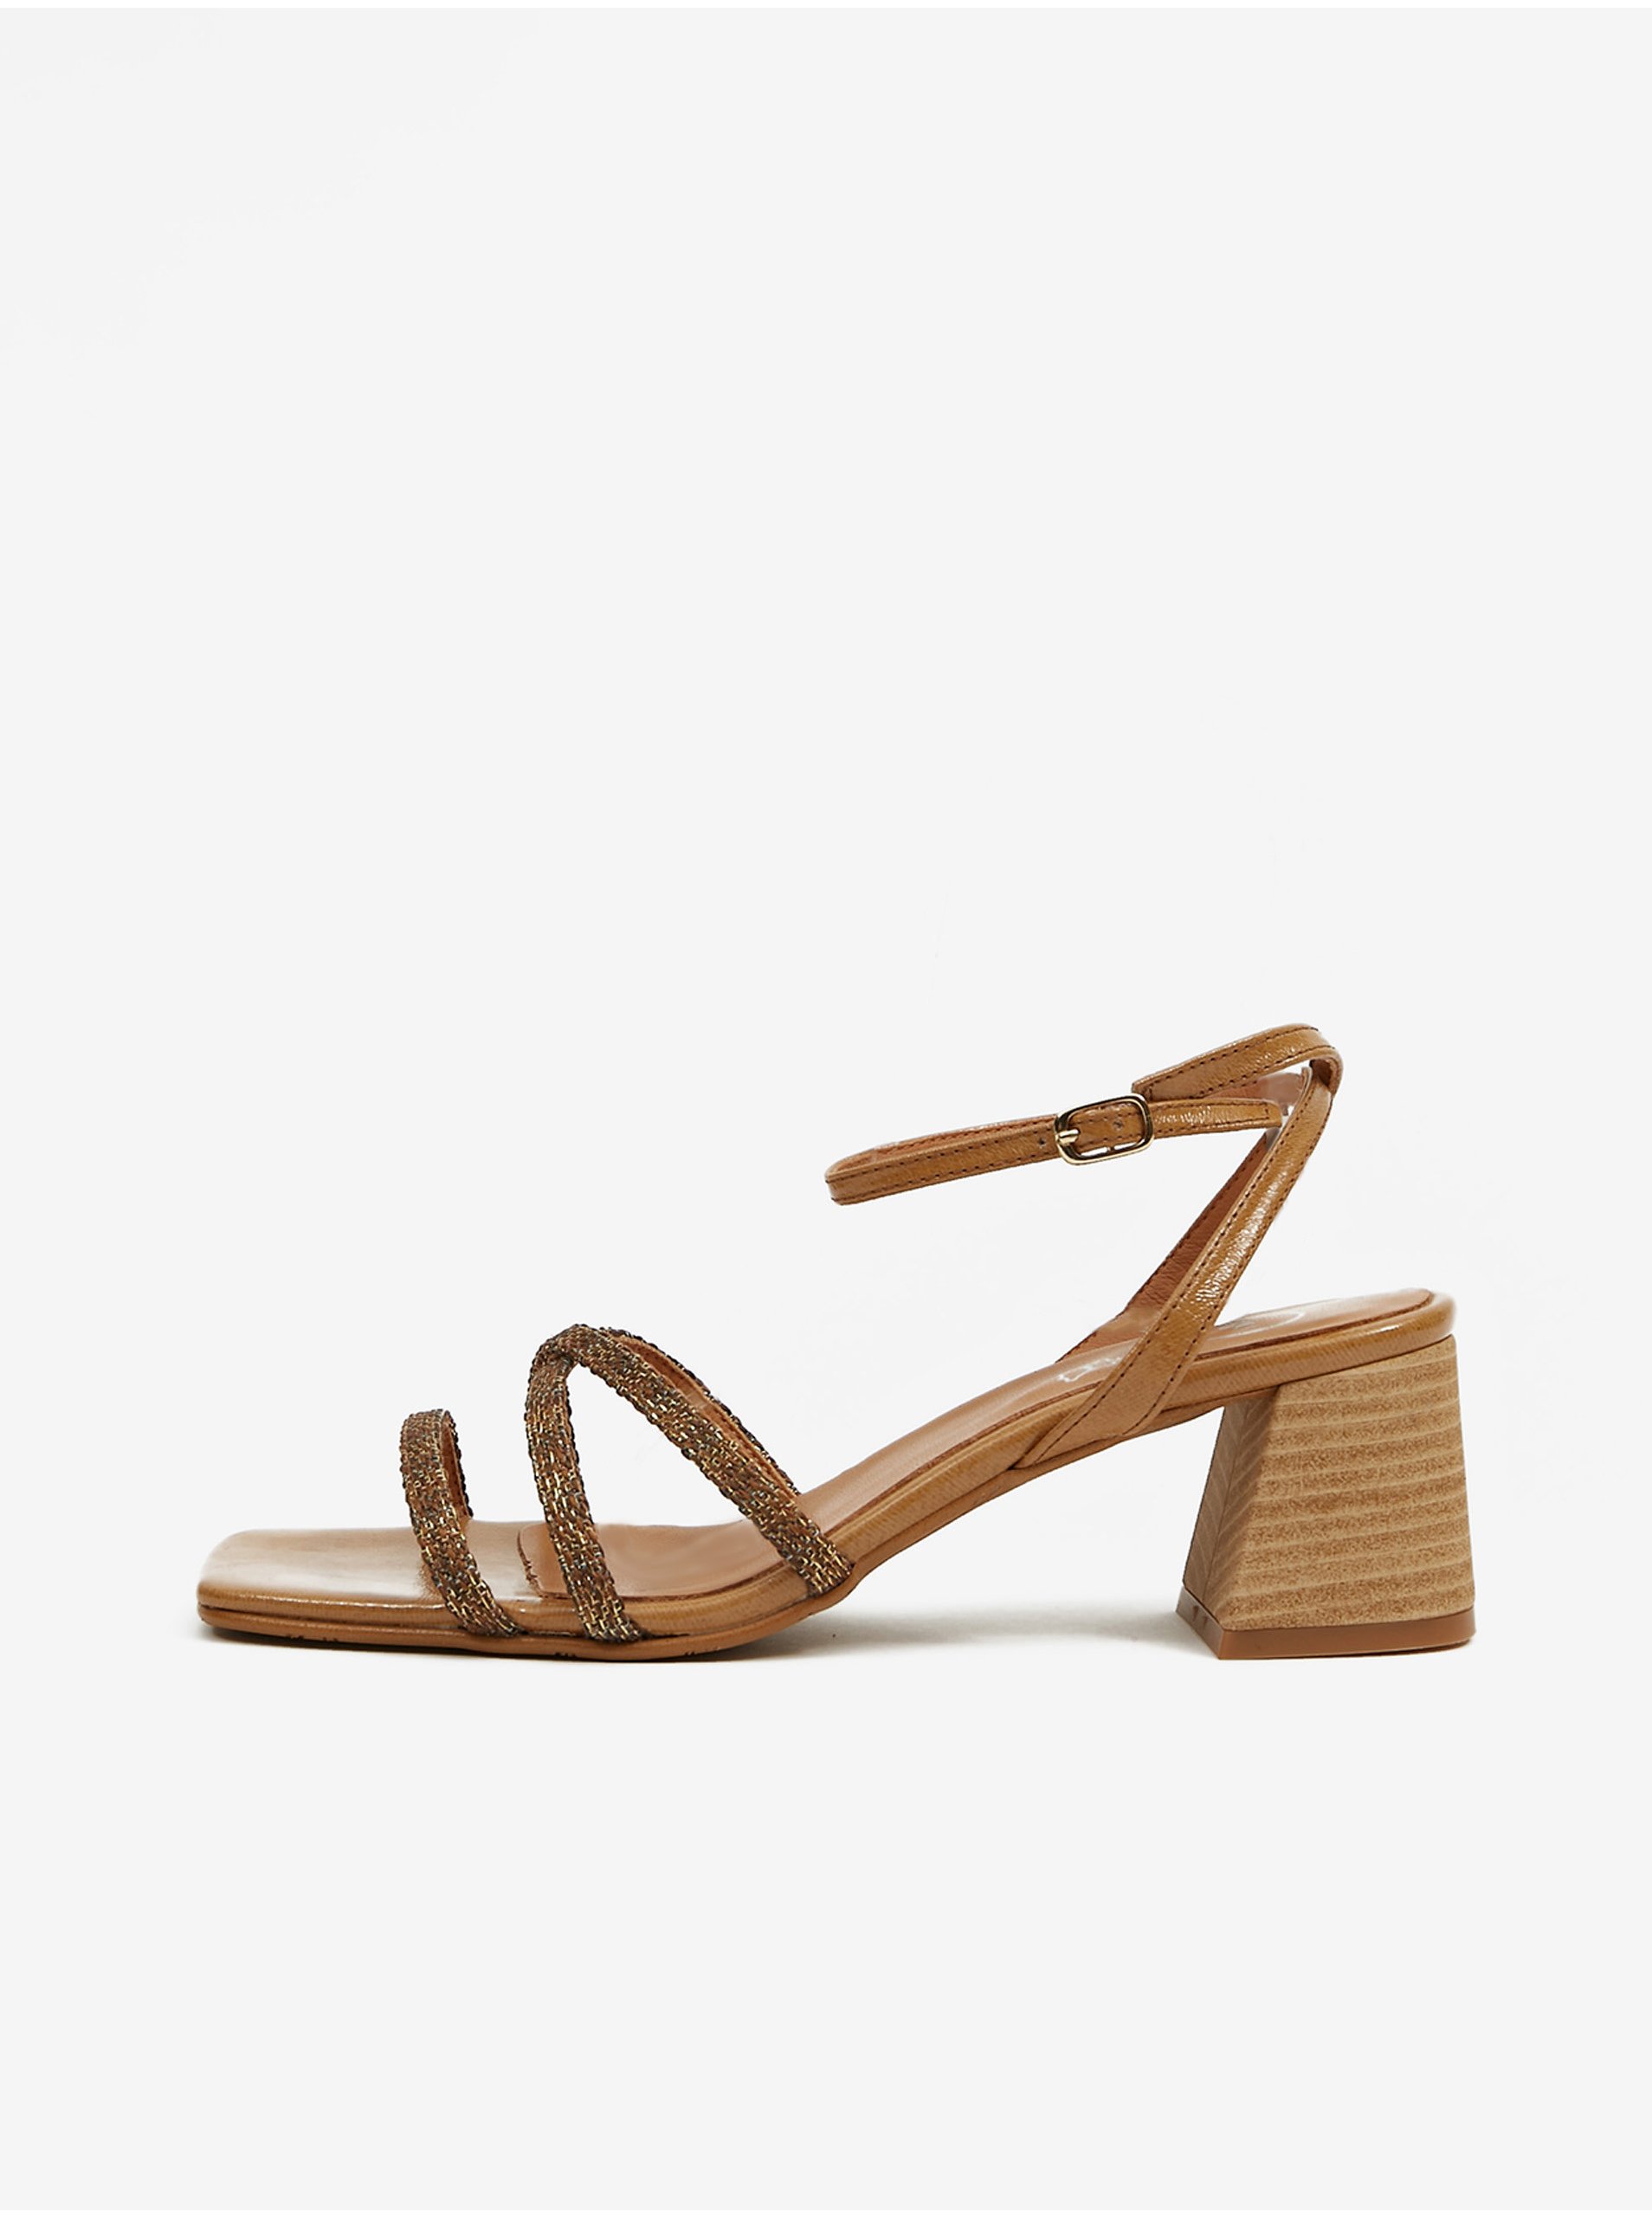 E-shop Hnedé dámske sandále na podpätku OJJU